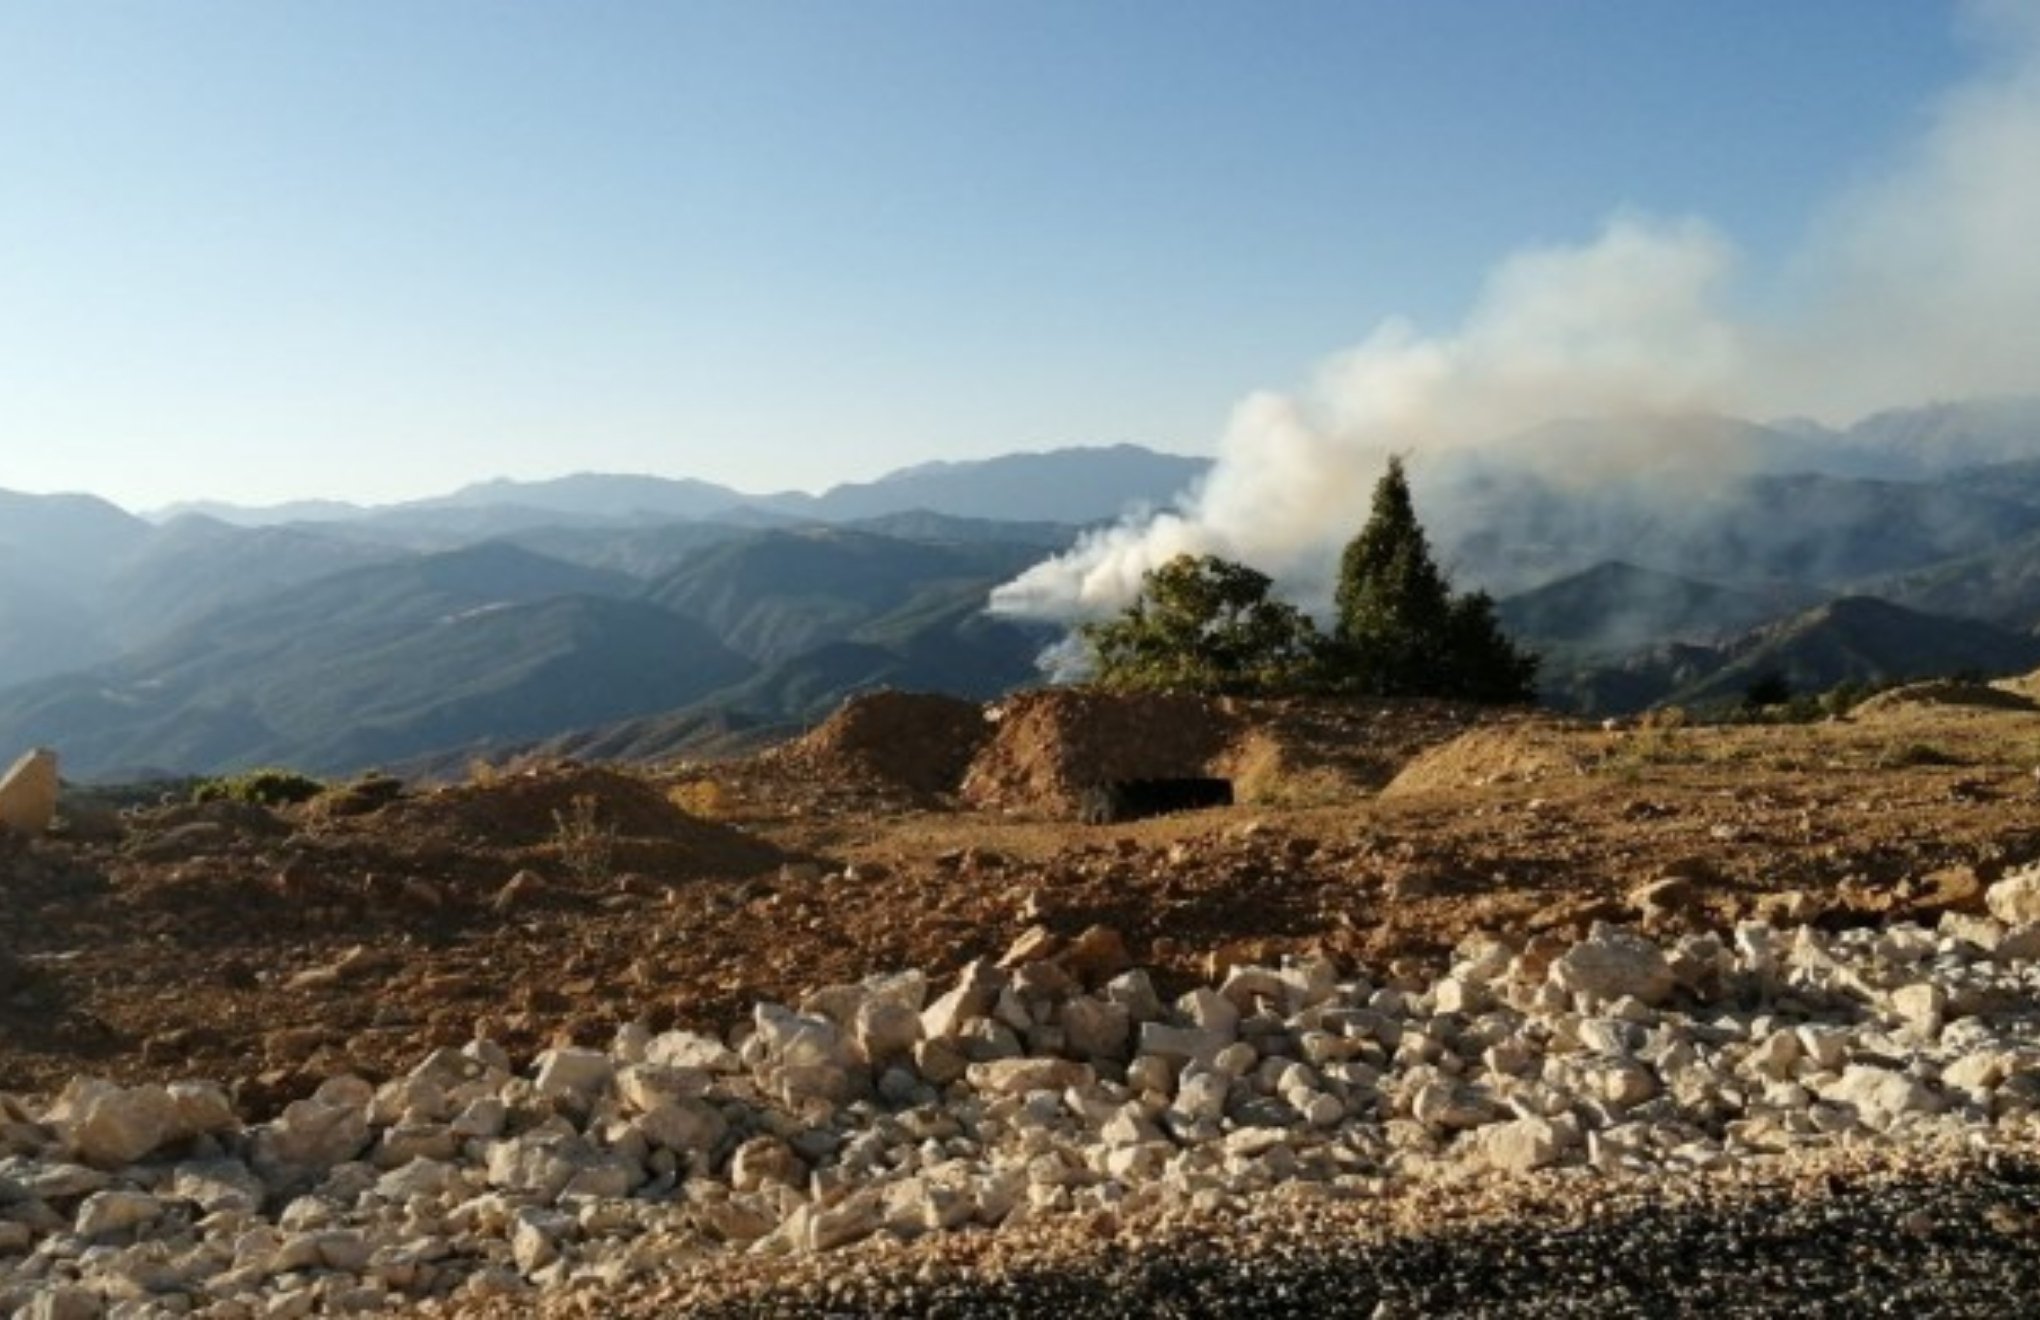 Hozat’ta orman yangına çatışma nedeniyle müdahale edilemiyor